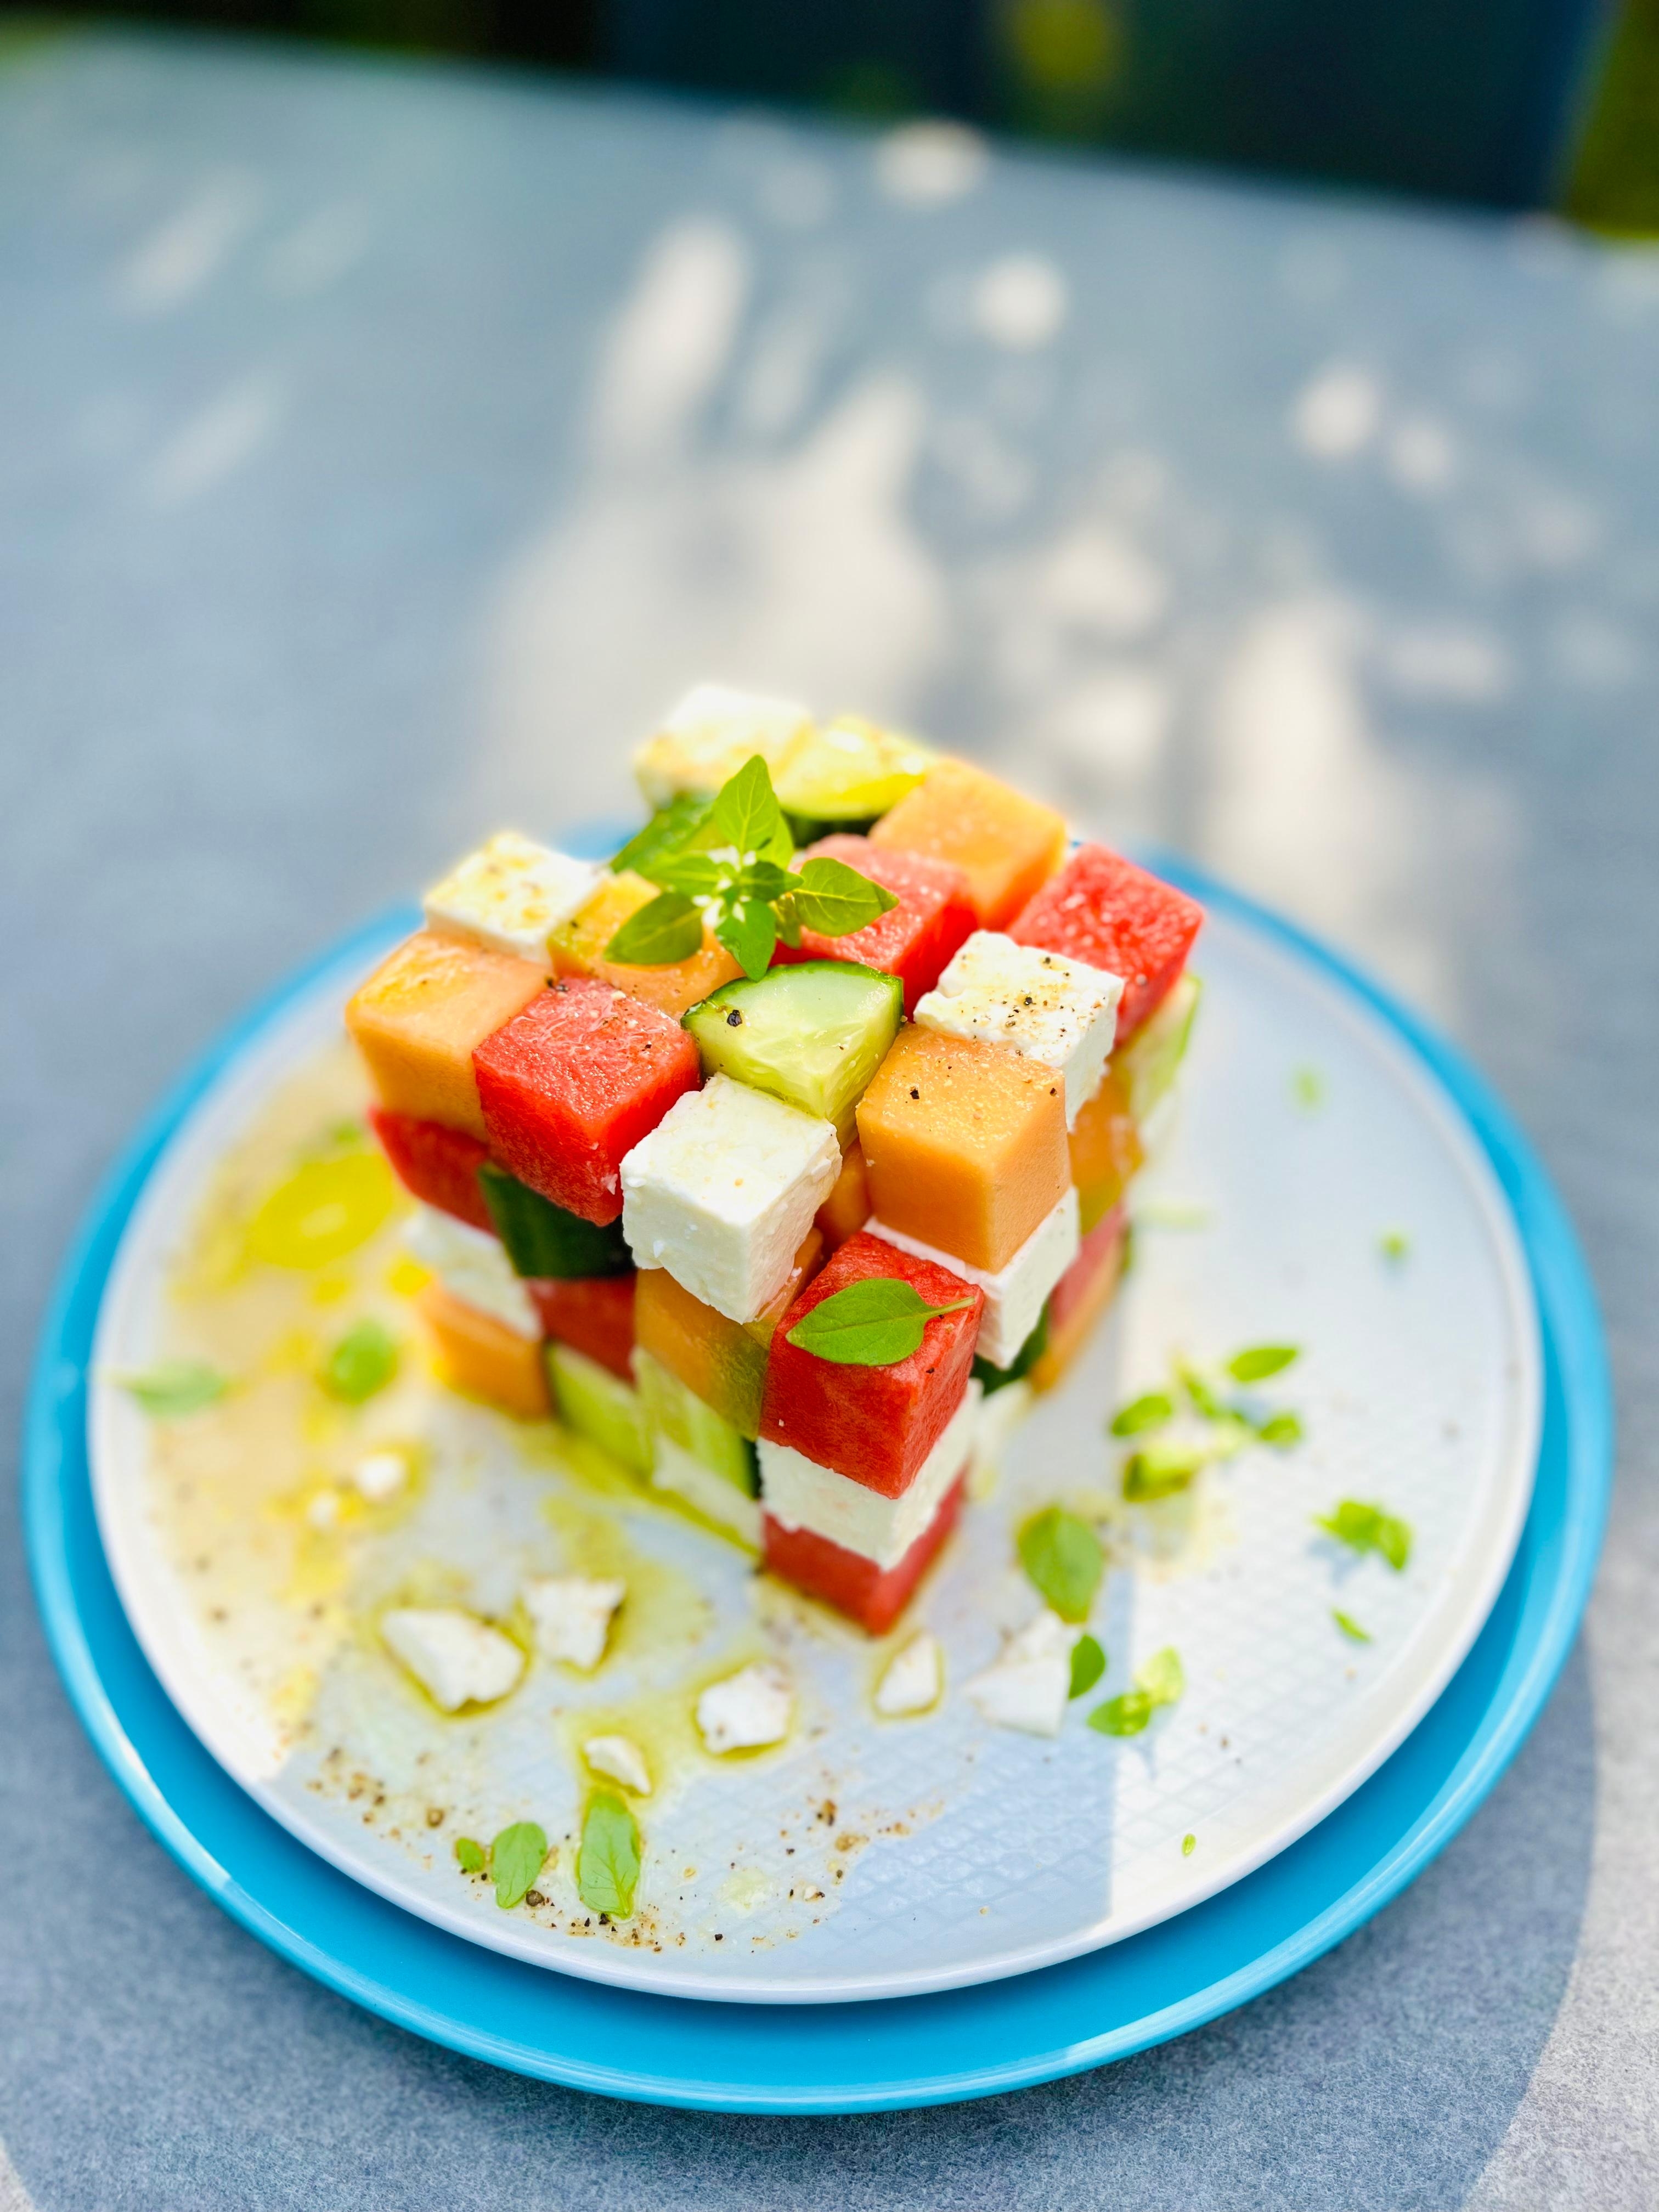 Anstatt Rubik‘s Cube 😉 #summerfood #salat #couchliebt #sommer #lecker #ichliebeessen